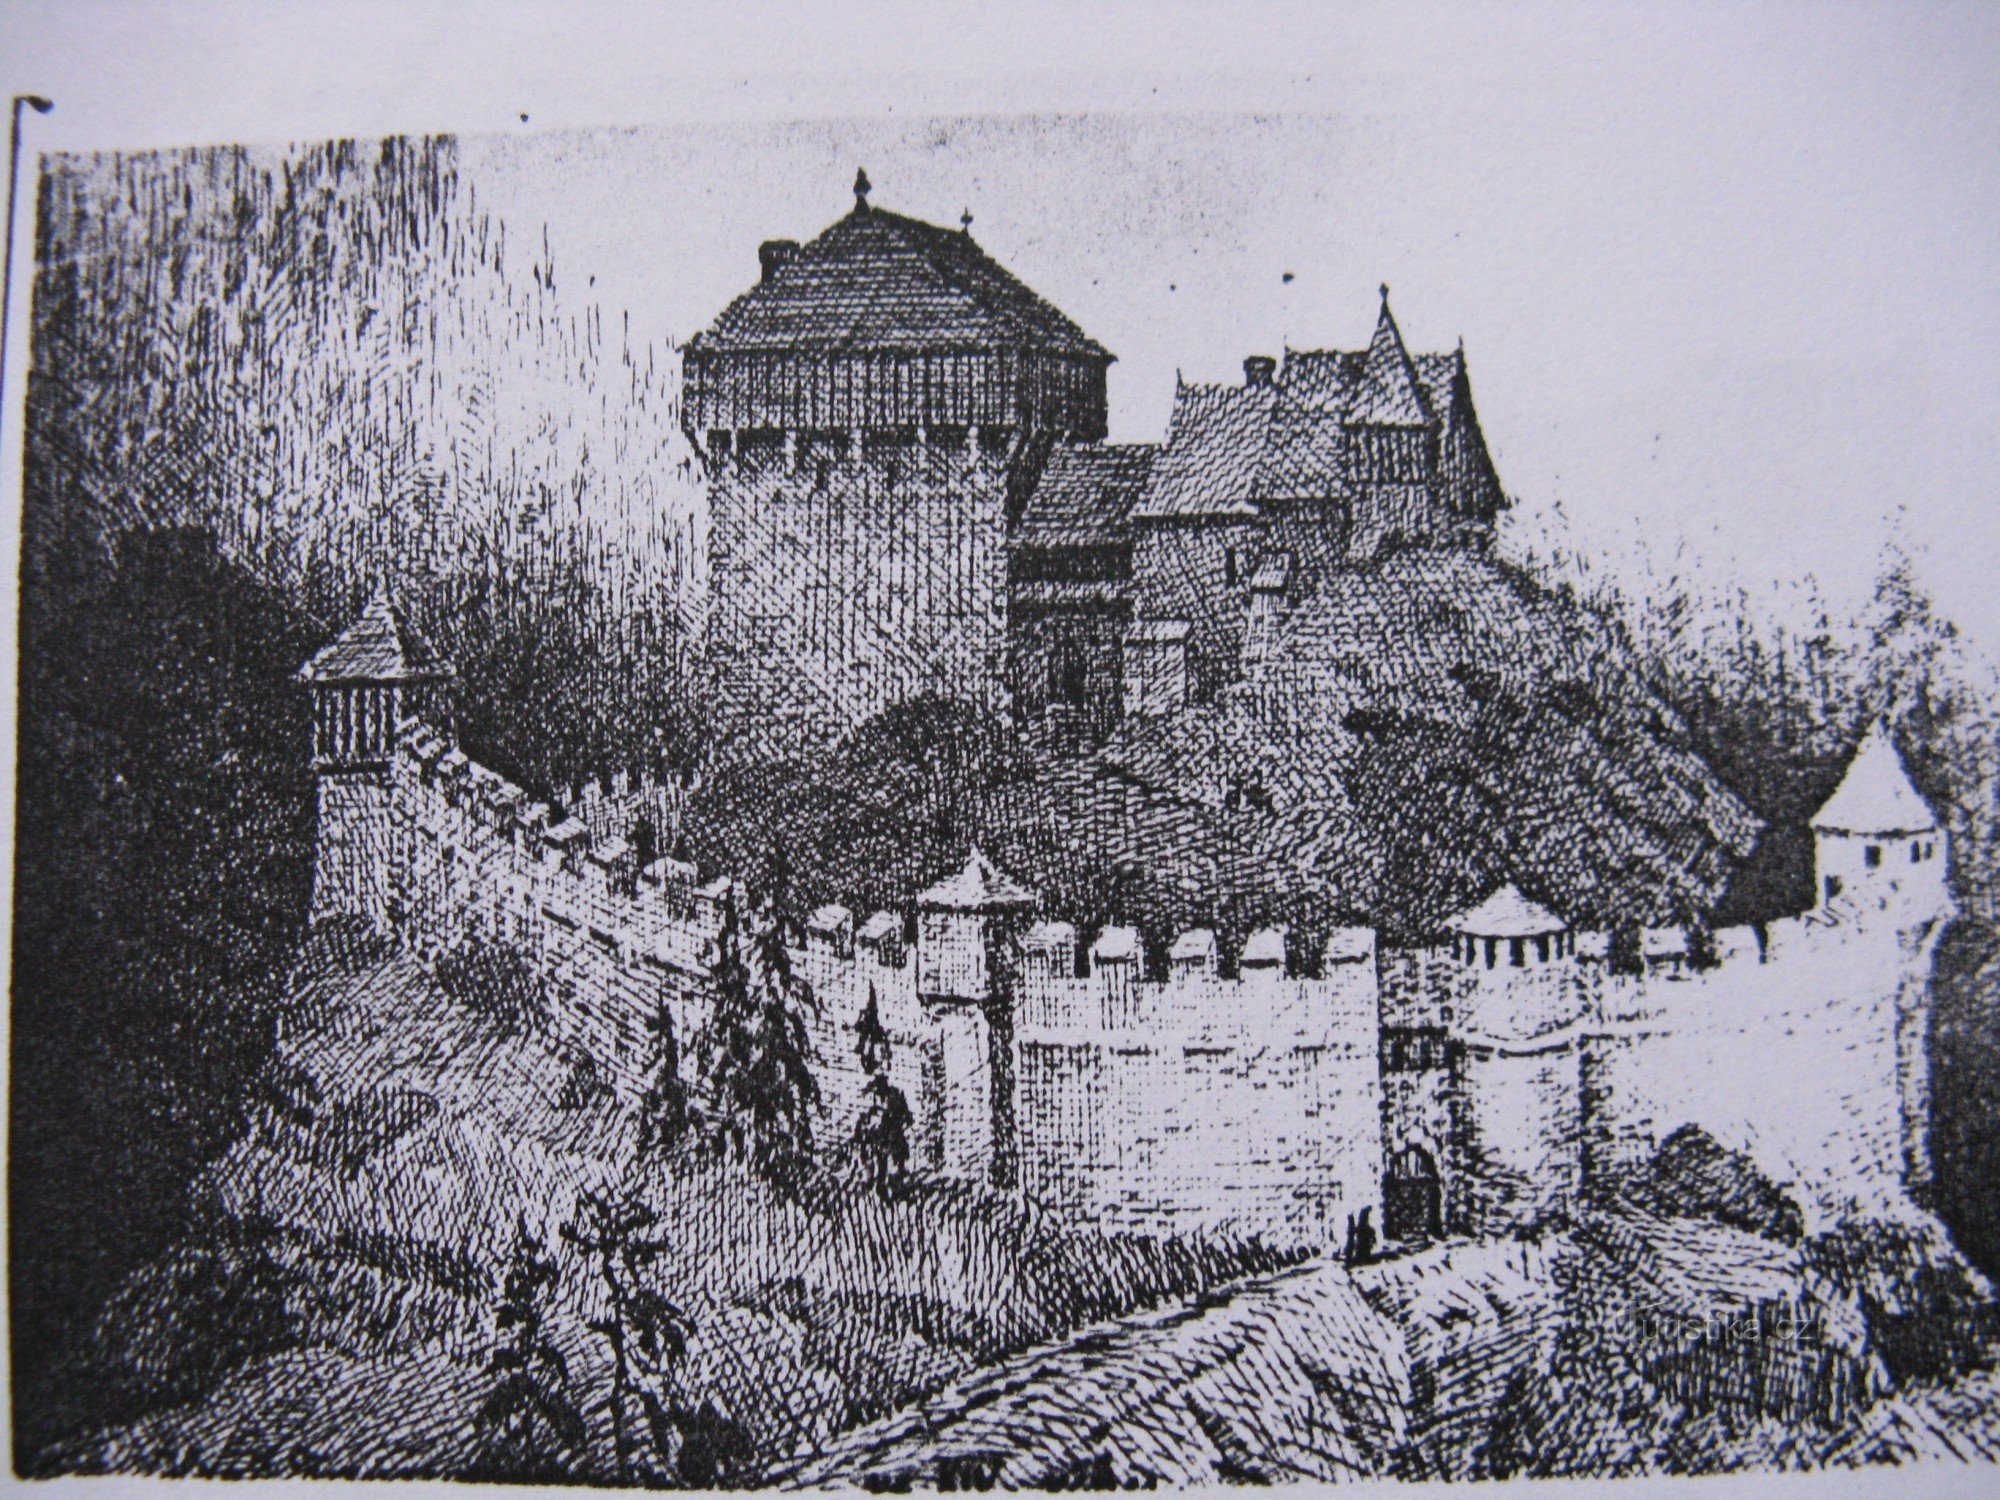 辉煌岁月的纳瓦罗夫城堡 — 旧明信片